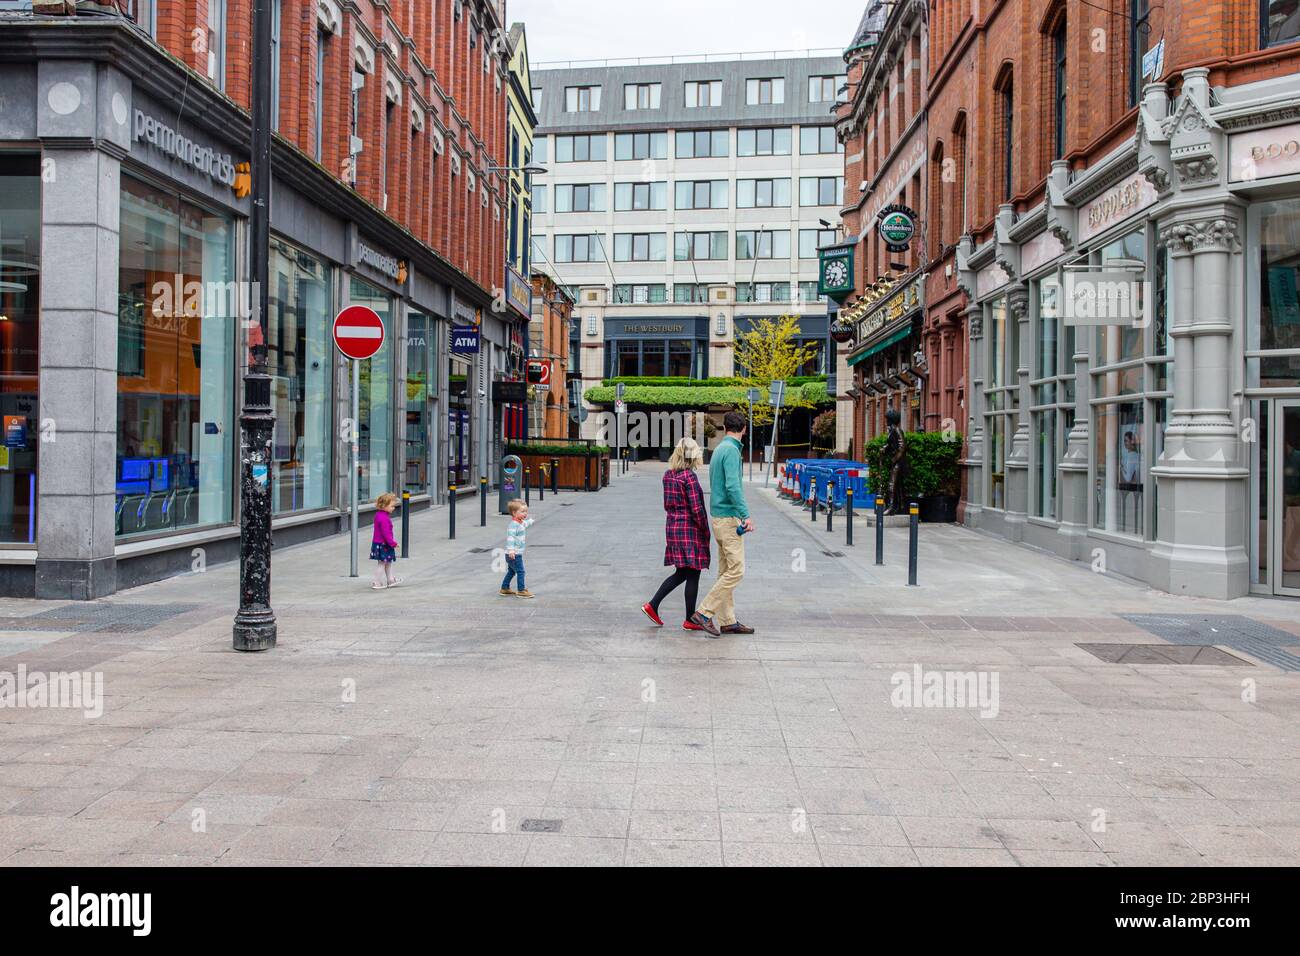 Visite en famille de Grafton Street déserte dans le centre de Dublin et ses commerces fermés, magasins et pubs fermés à clé en raison de la pandémie de coronavirus. Banque D'Images